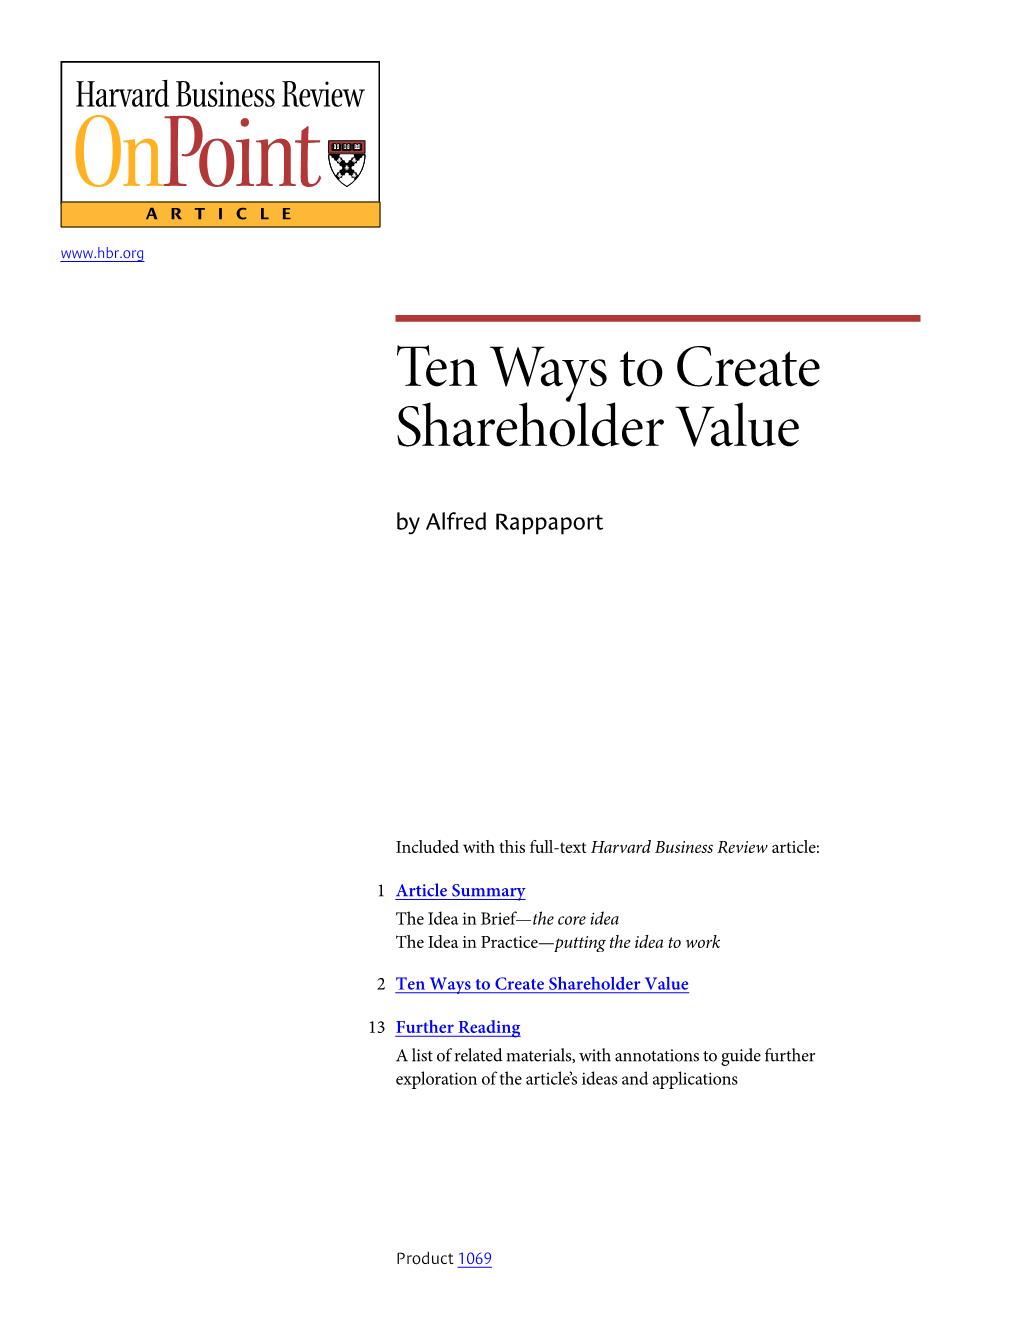 Ten Ways to Create Shareholder Value